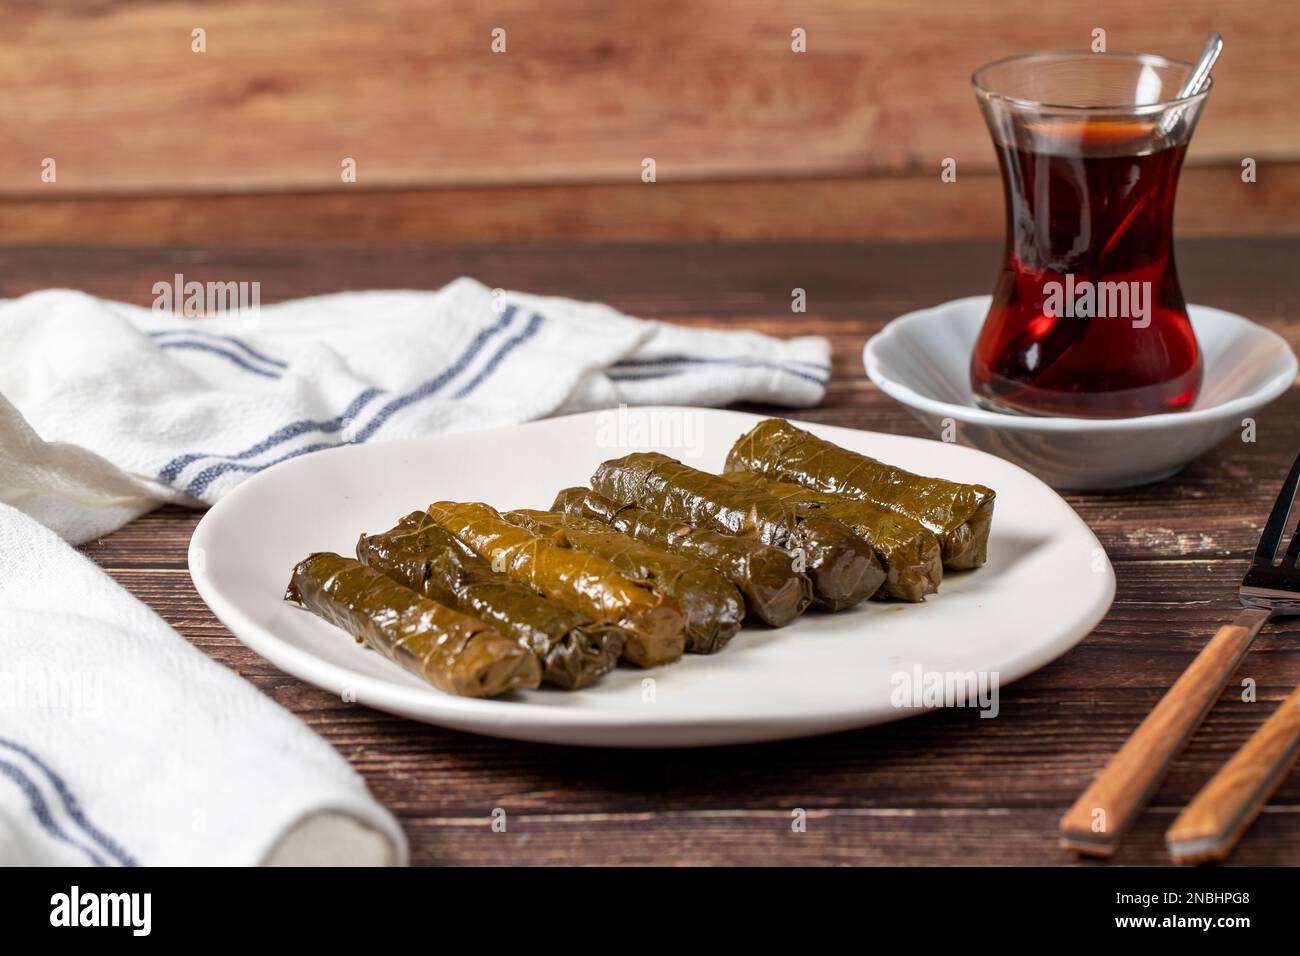 Farce délicieuse (yabrak sarma). Cuisine traditionnelle spécialités turques. Feuilles de raisin farcies de riz dans une assiette sur plancher de bois Banque D'Images